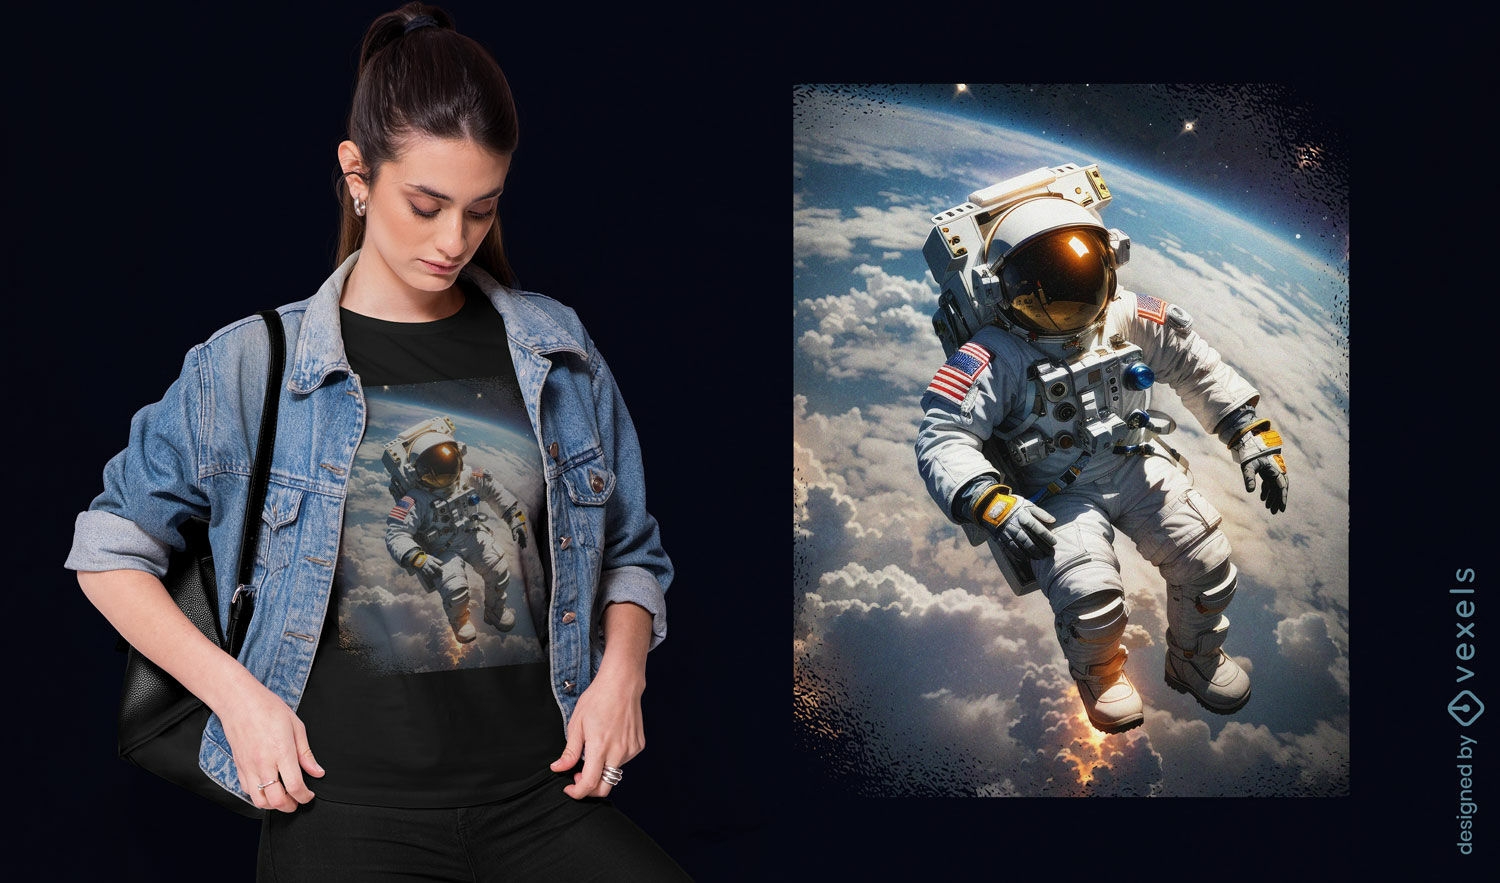 Design de camiseta de astronauta para caminhada no espa?o